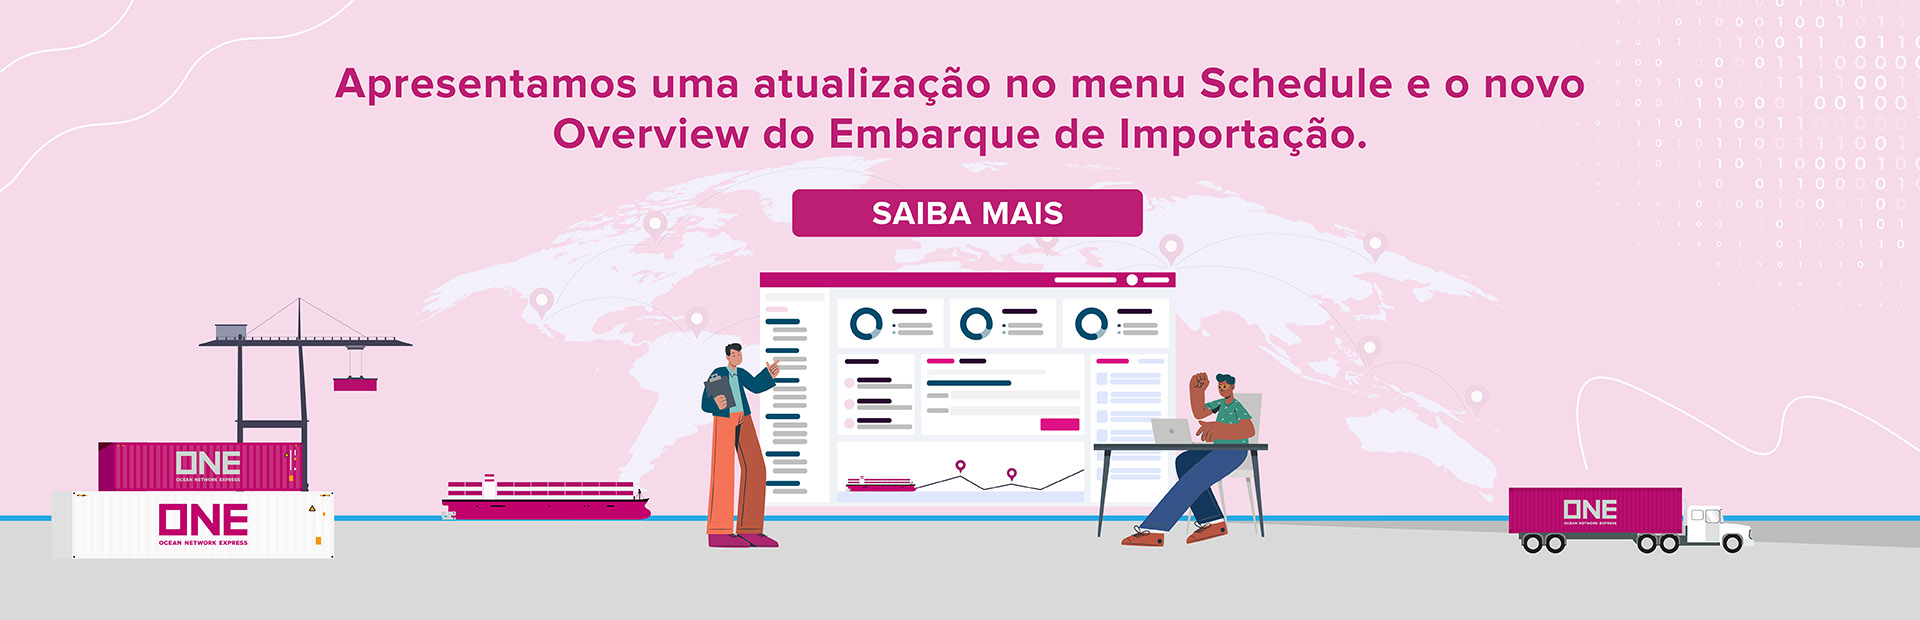 Website Banner Portuguese Translation (2)_Latest.jpeg